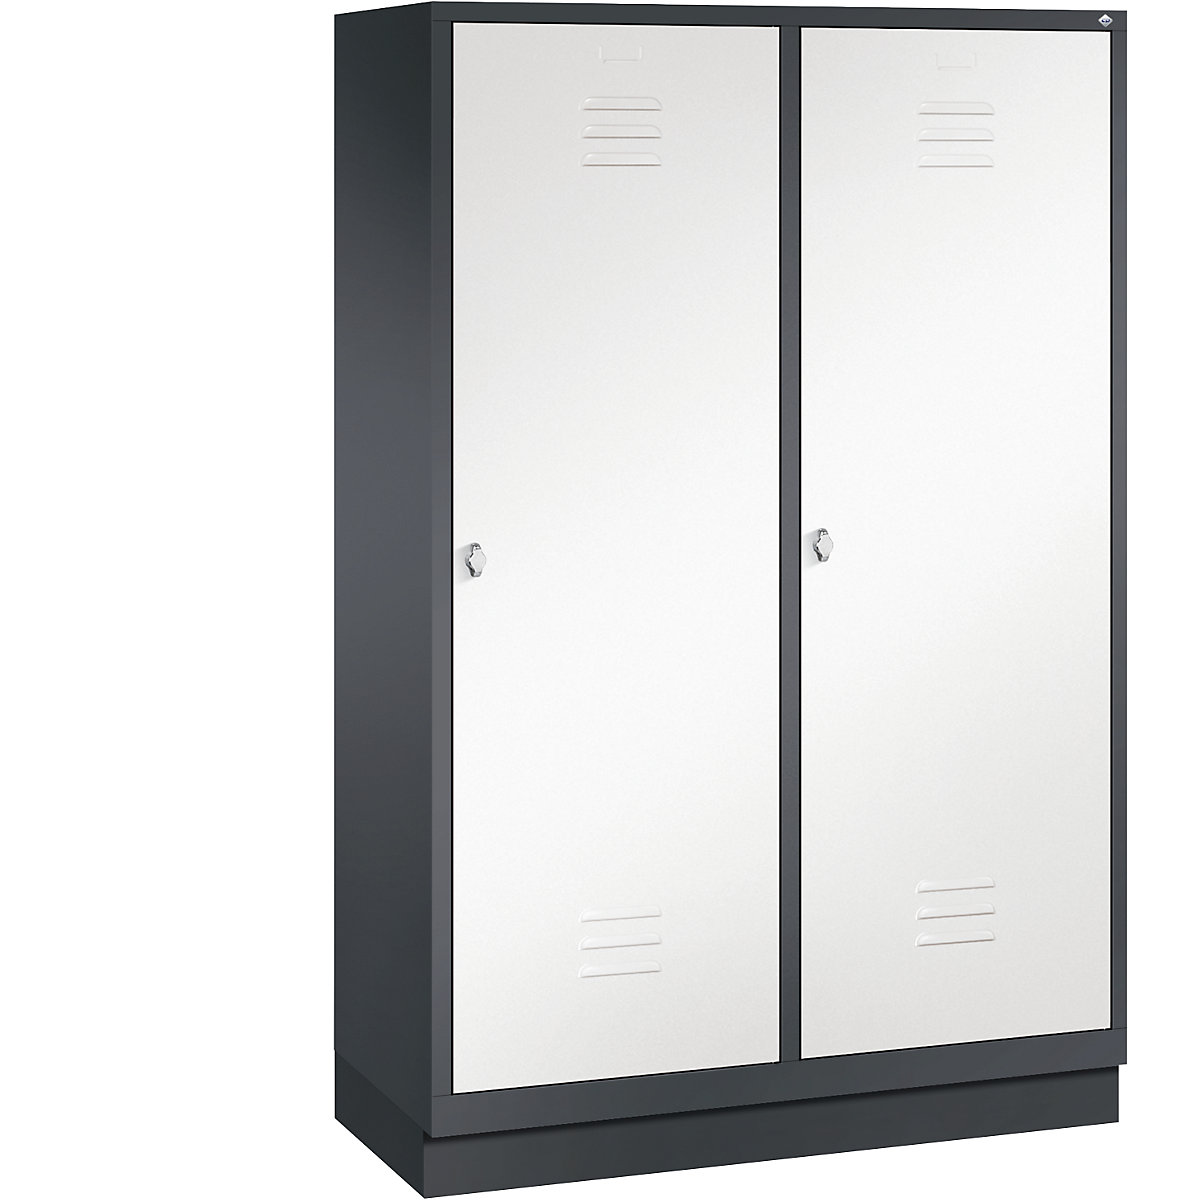 Šatní skříň se soklem CLASSIC s dveřmi přes 2 oddíly – C+P, 4 oddíly, šířka oddílu 300 mm, černošedá / dopravní bílá